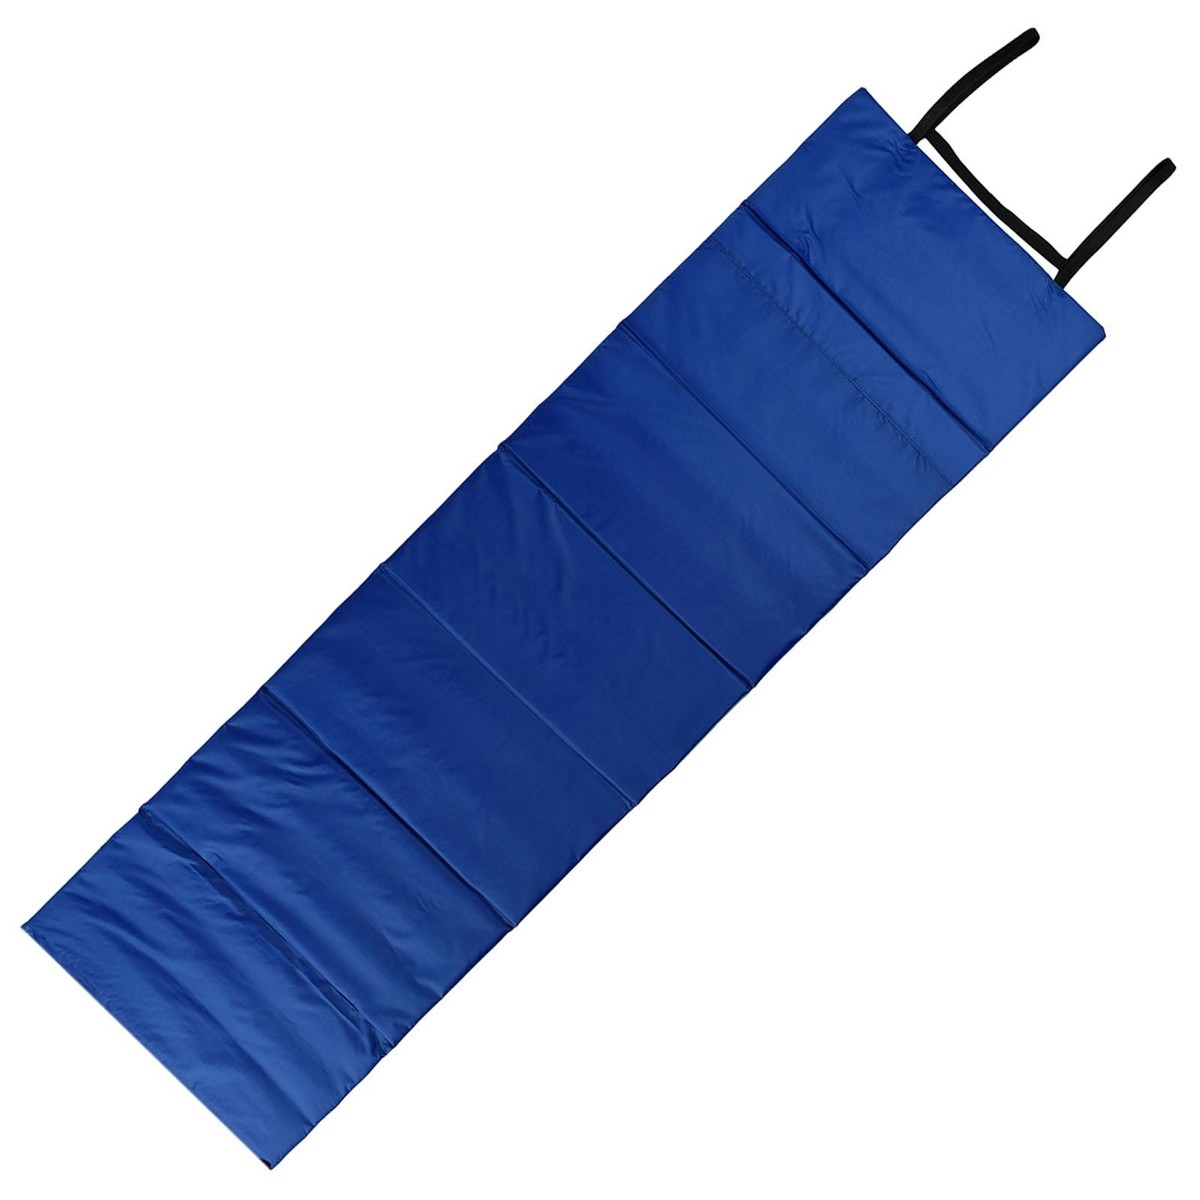 Коврик складной onlitop, 170х51 см, цвет бирюзовый/василек коврик под колени для йоги sangh flower 20х20 см бирюзовый